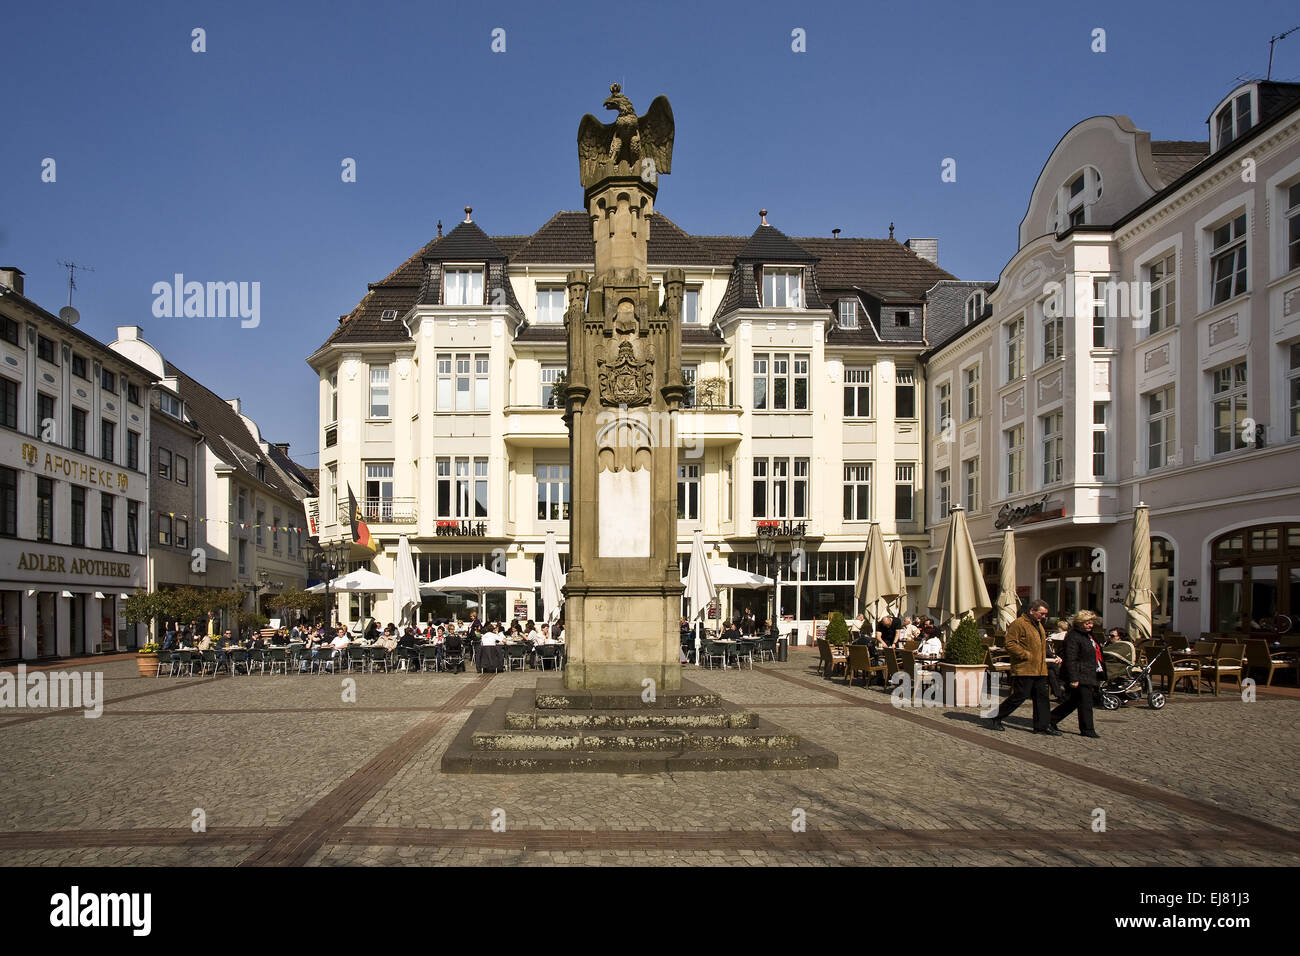 Altmarkt, Moers, Deutschland Stockfotografie - Alamy